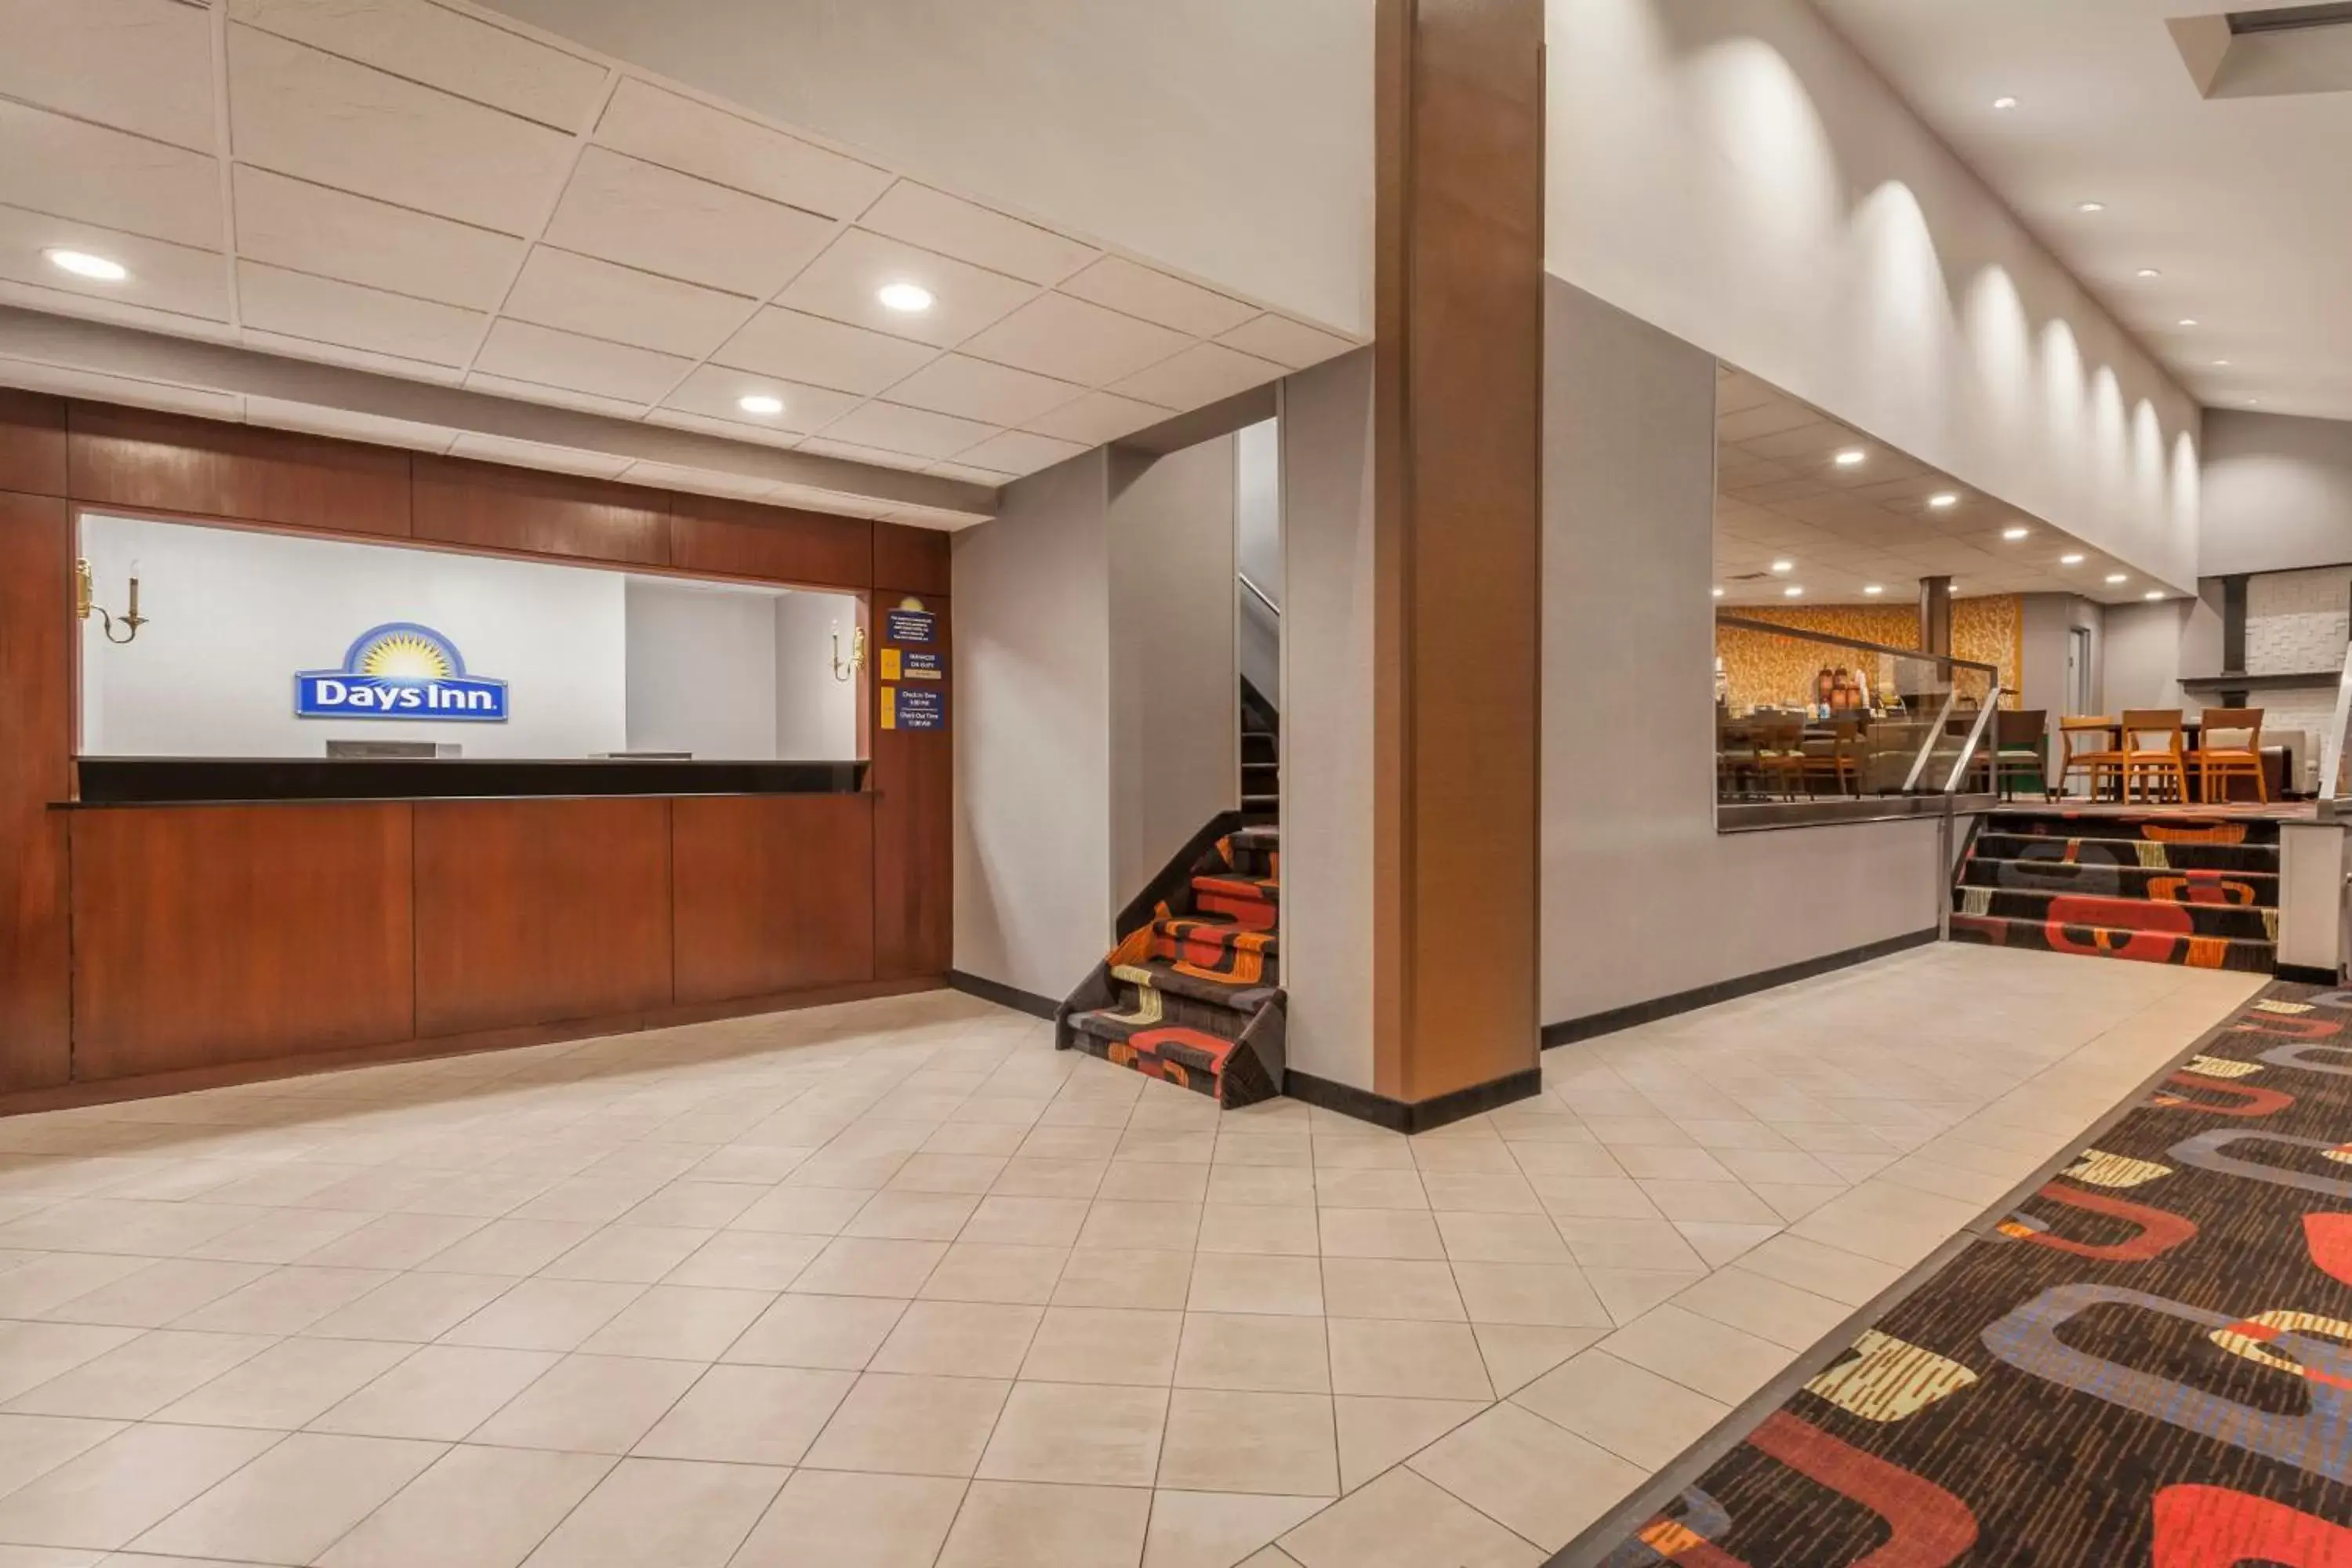 Lobby or reception, Lobby/Reception in Days Inn by Wyndham Woodbury Long Island